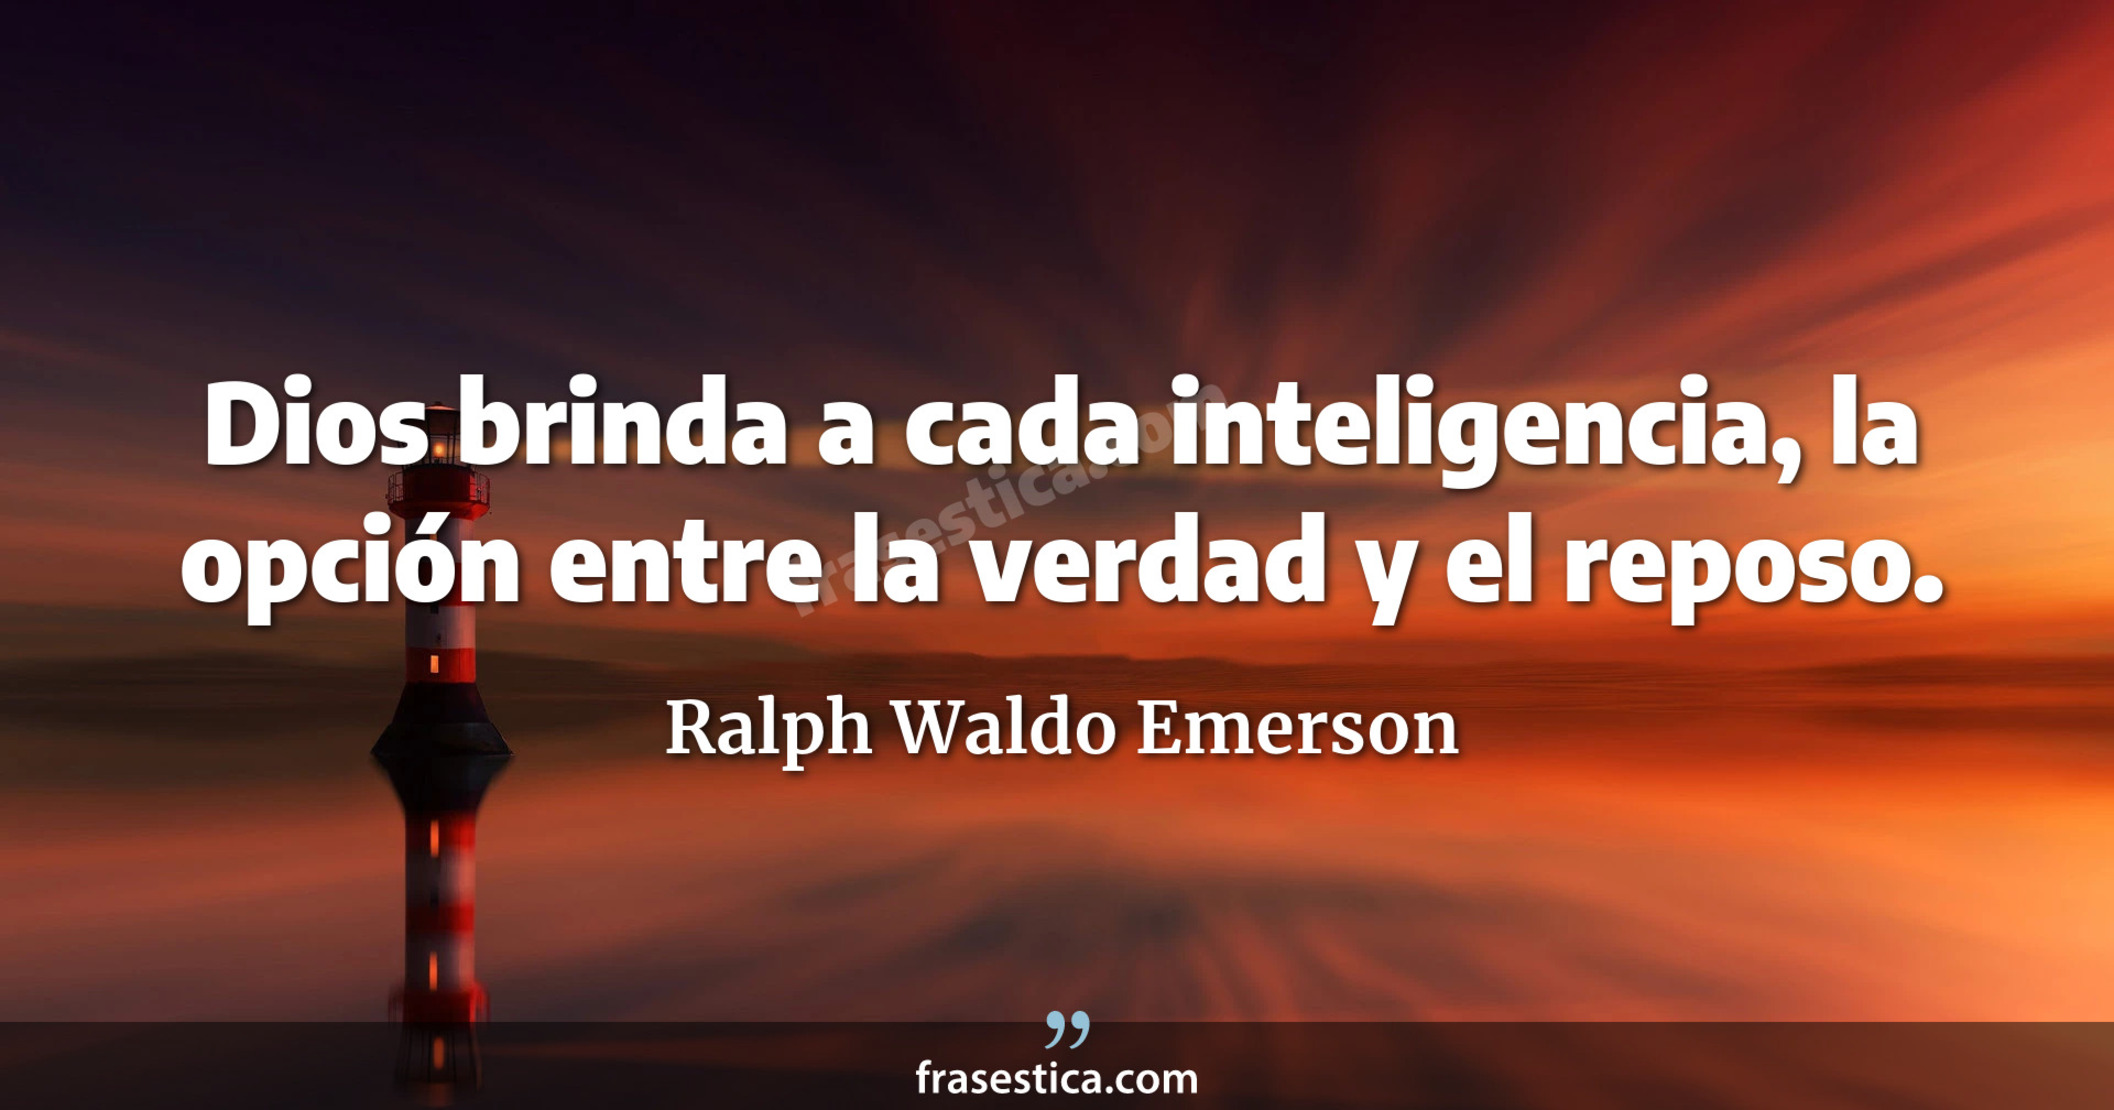 Dios brinda a cada inteligencia, la opción entre la verdad y el reposo. - Ralph Waldo Emerson